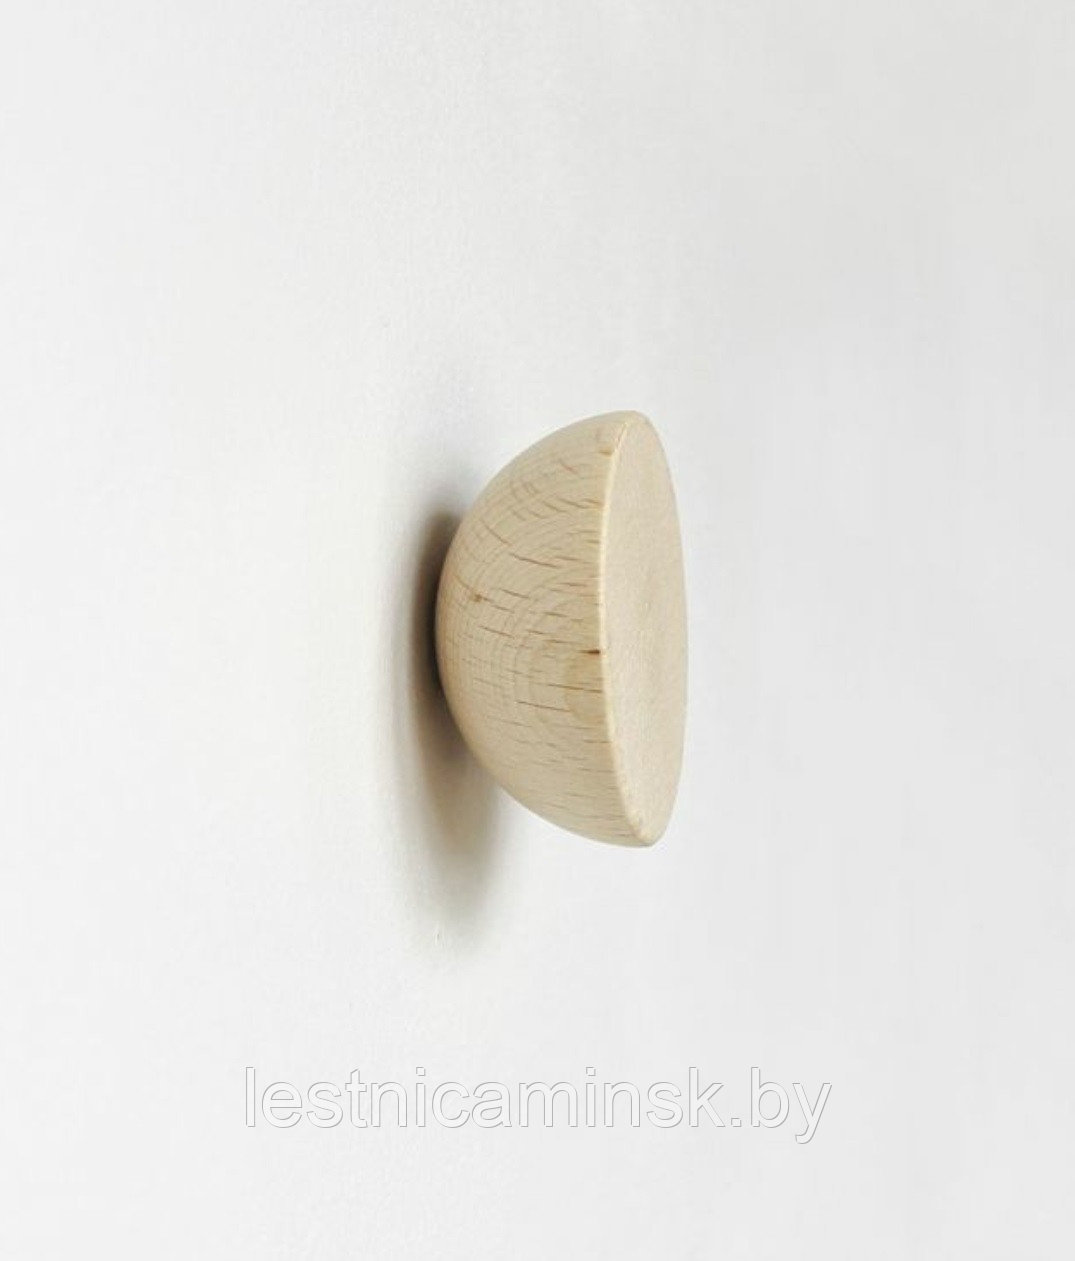 Ручка для мебели деревянные (РМ 20.1) из дуба или ясеня 45*30*22 .Шлифованные под покрытие.